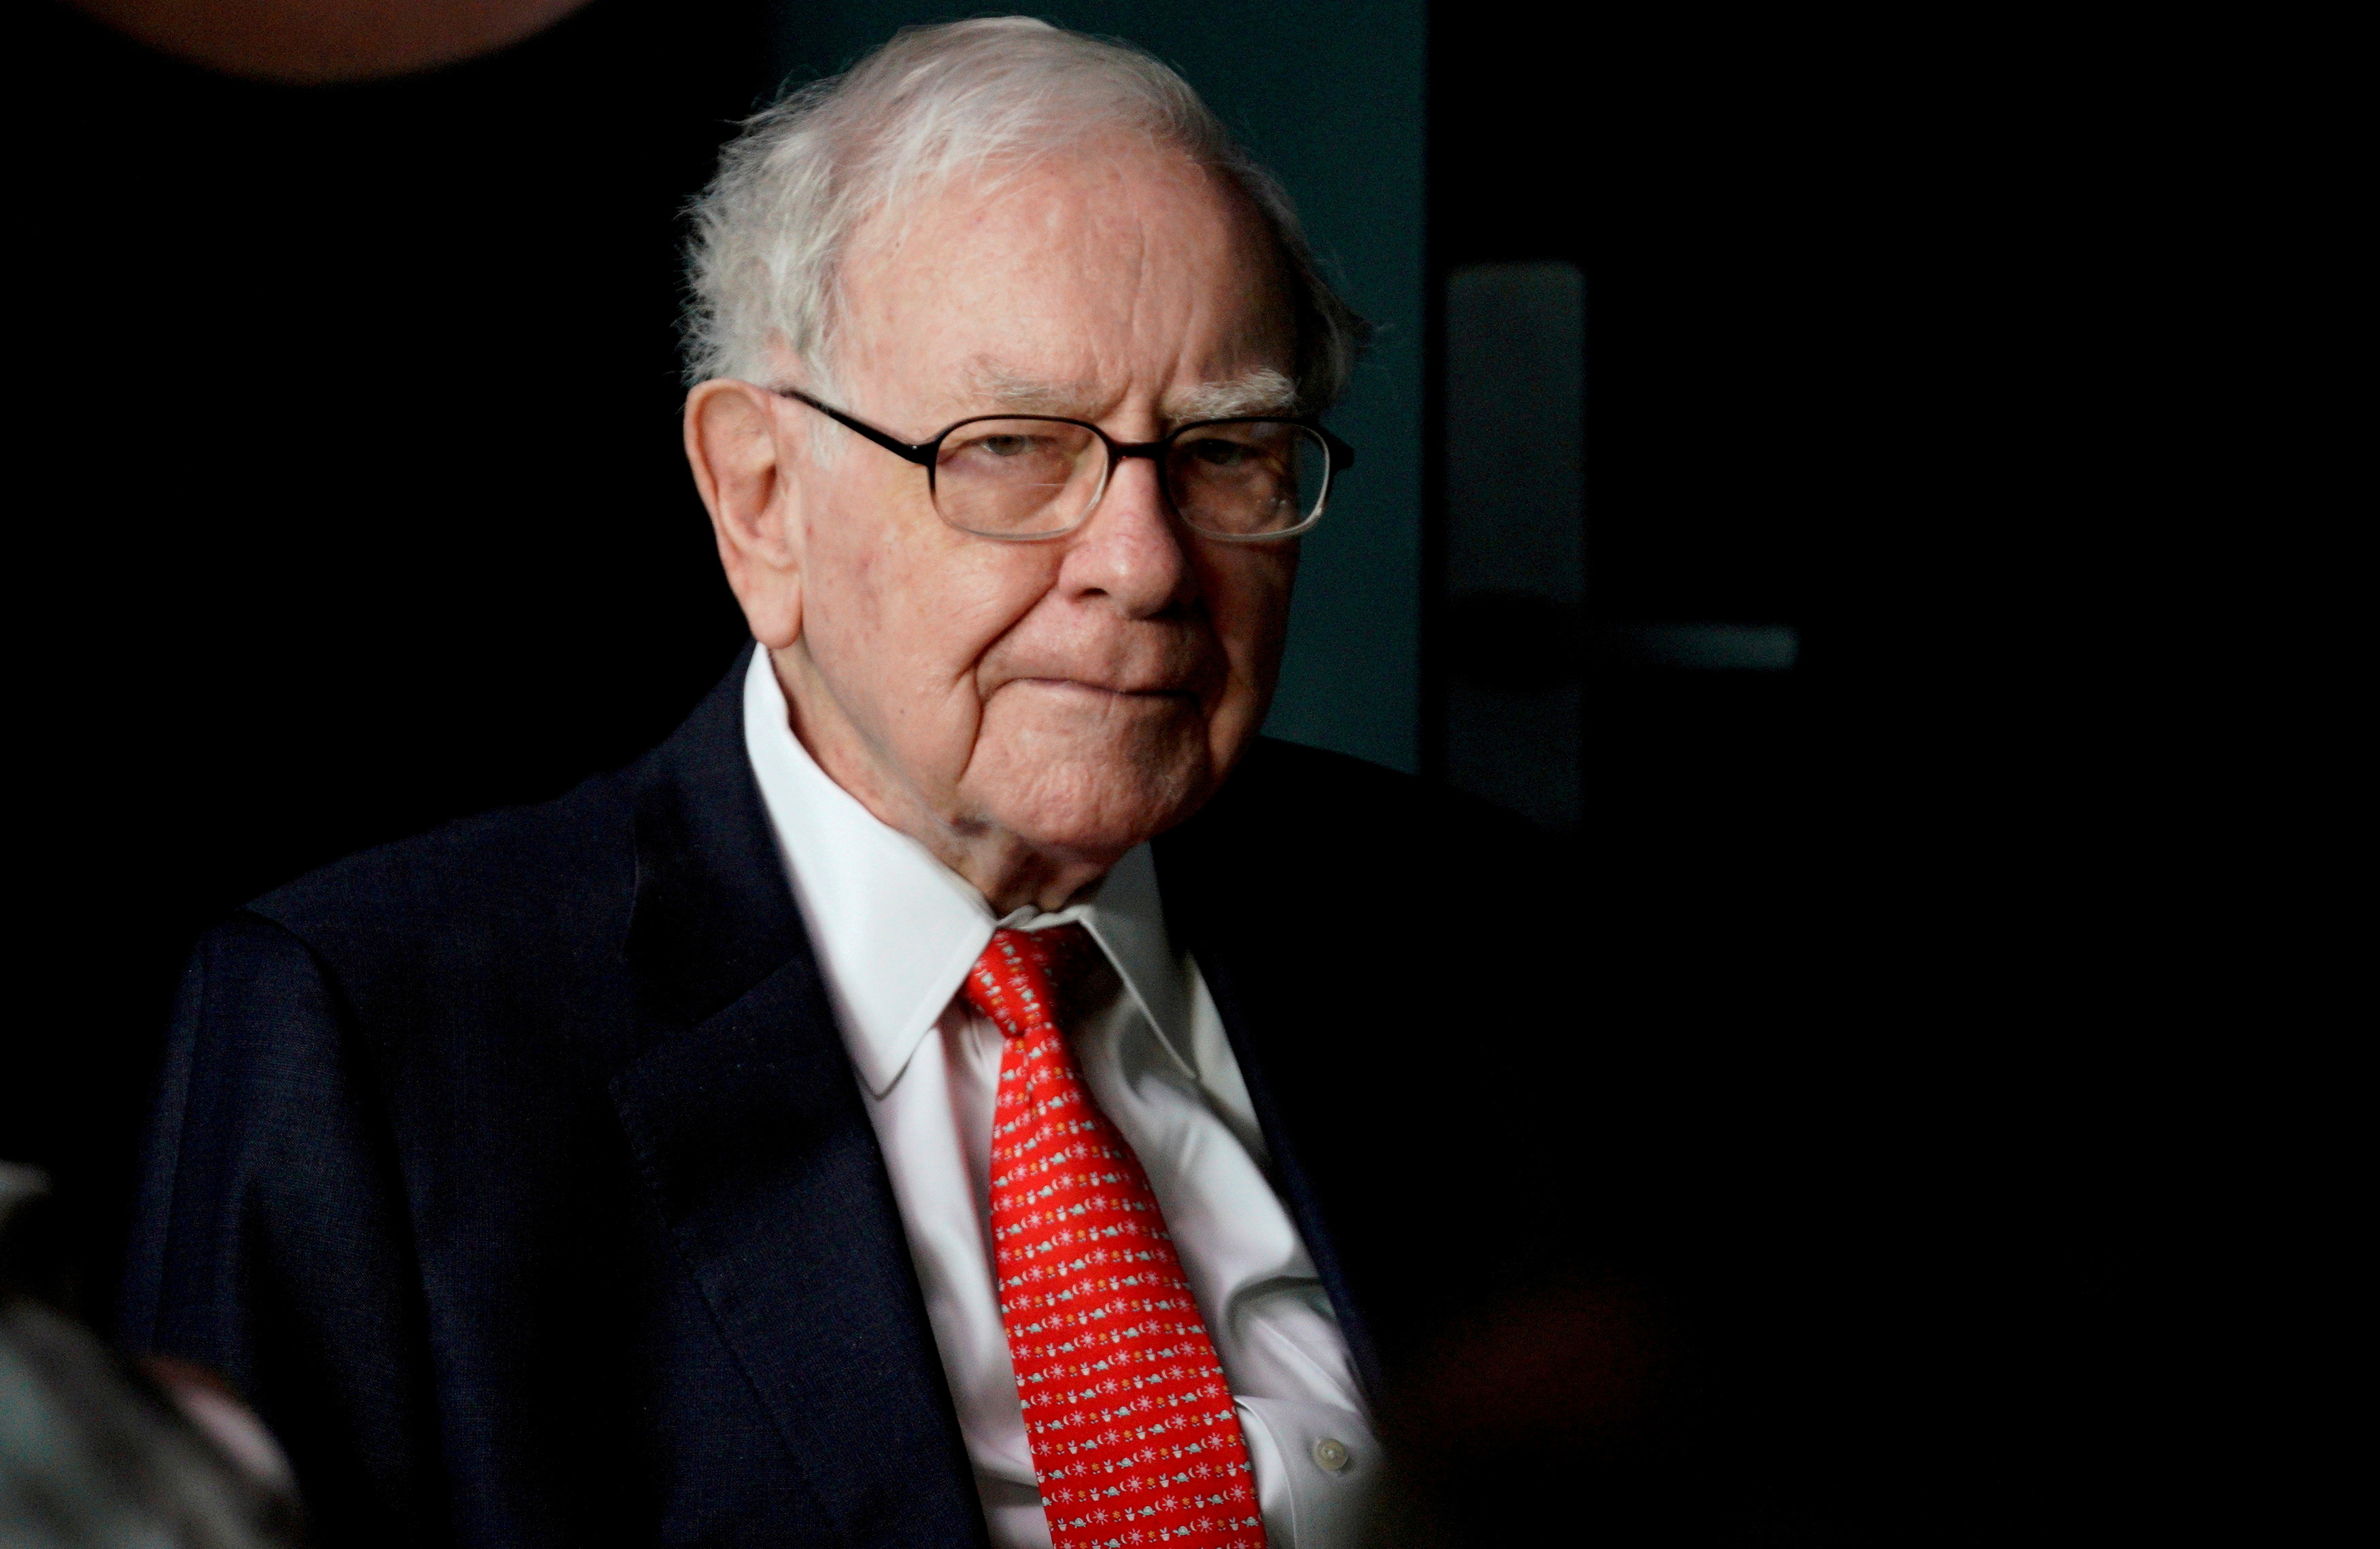 El multimillonario Warren Buffett ha sido un crítico fuerte de Bitcoin en los últimos años. REUTERS/Rick Wilking/File Photo